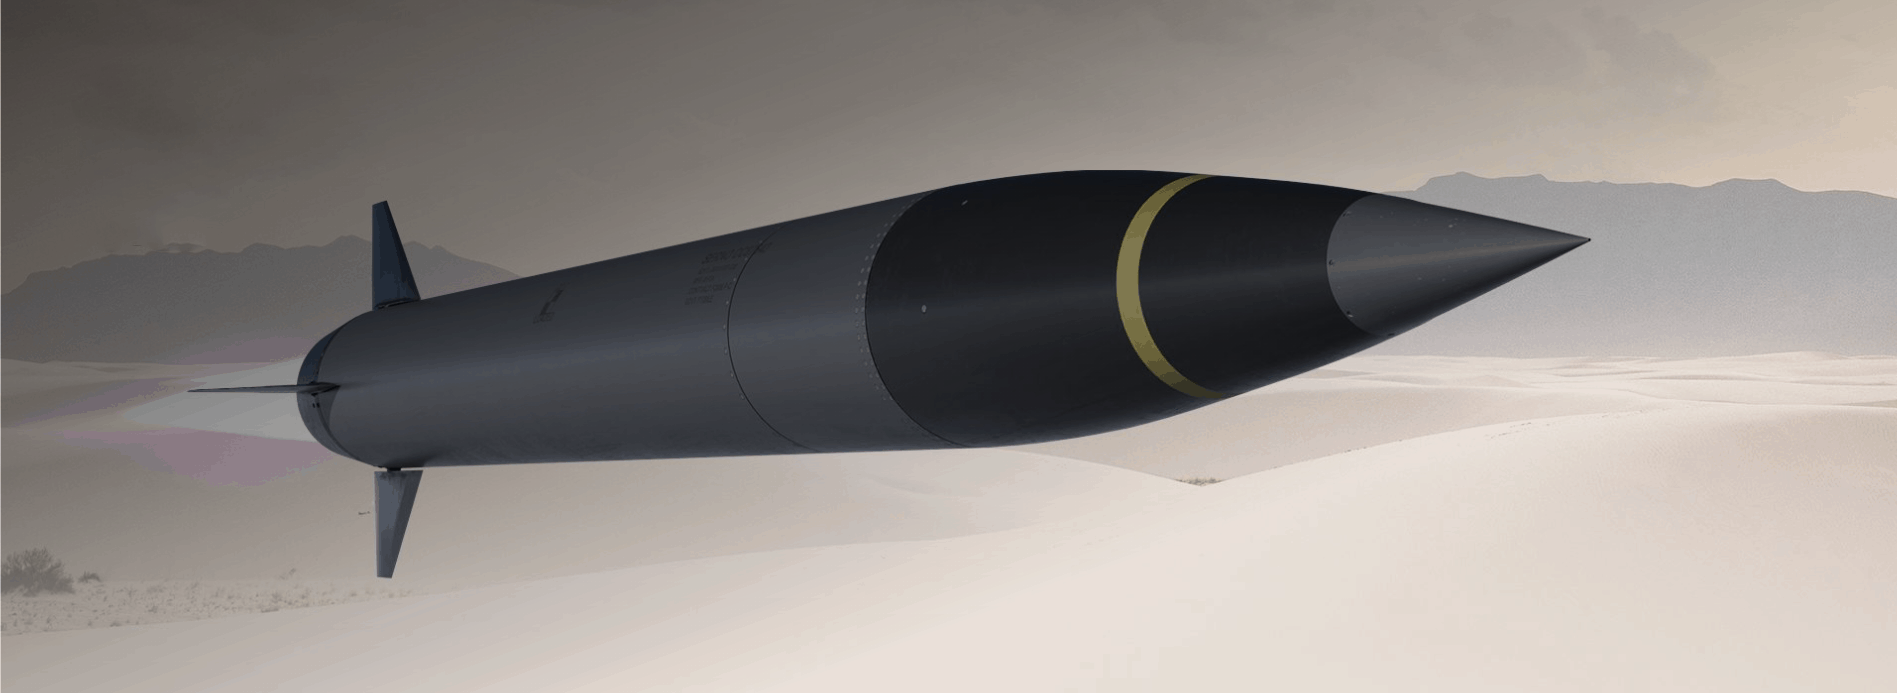 Ілюстрація ракети програми Precision Strike Missile (PrSM) від Lockheed Martin